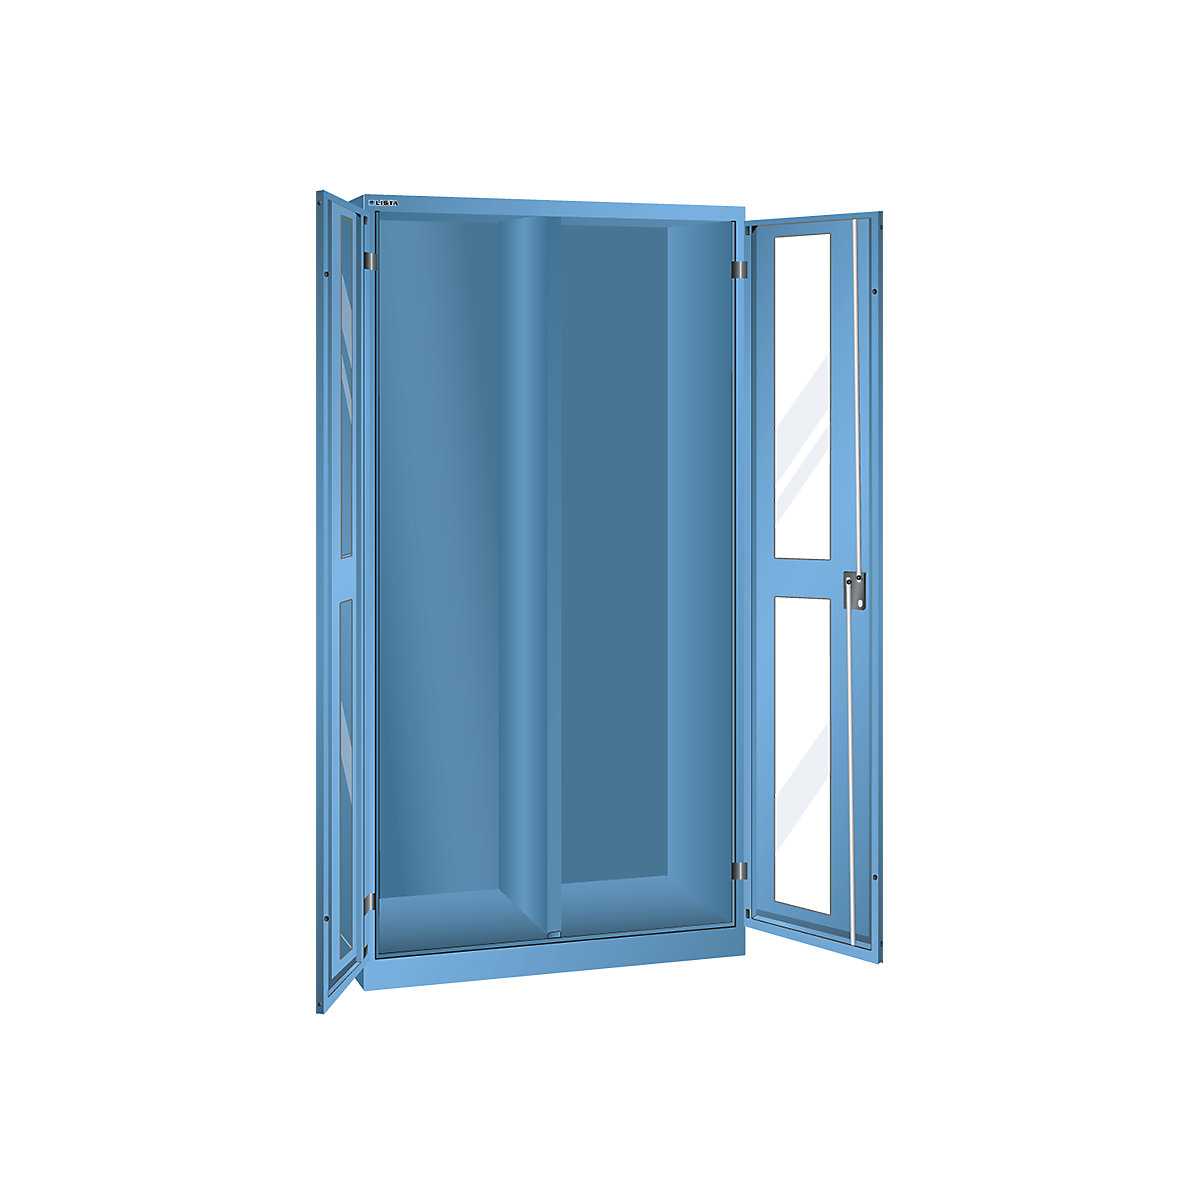 Cupboard with 2 viewing window doors, HxWxD 1950 x 1000 x 580 mm - LISTA